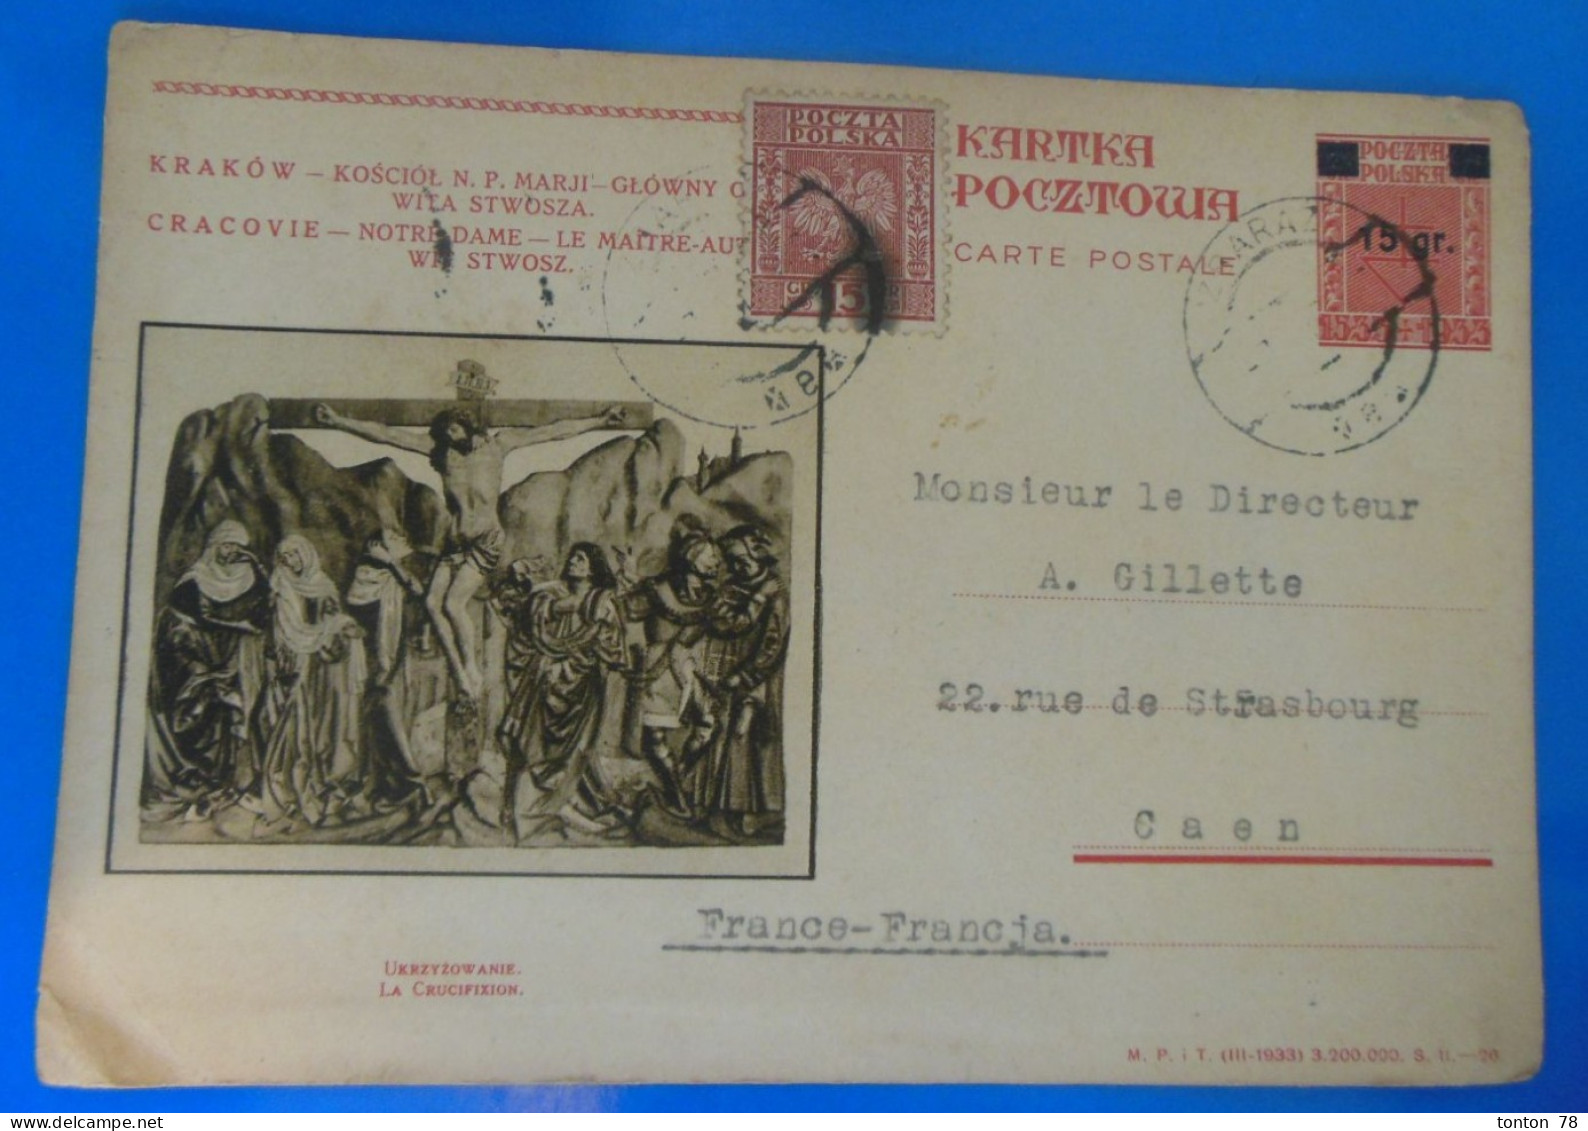 ENTIER POSTAL SUR CARTE  -  1934 - Stamped Stationery